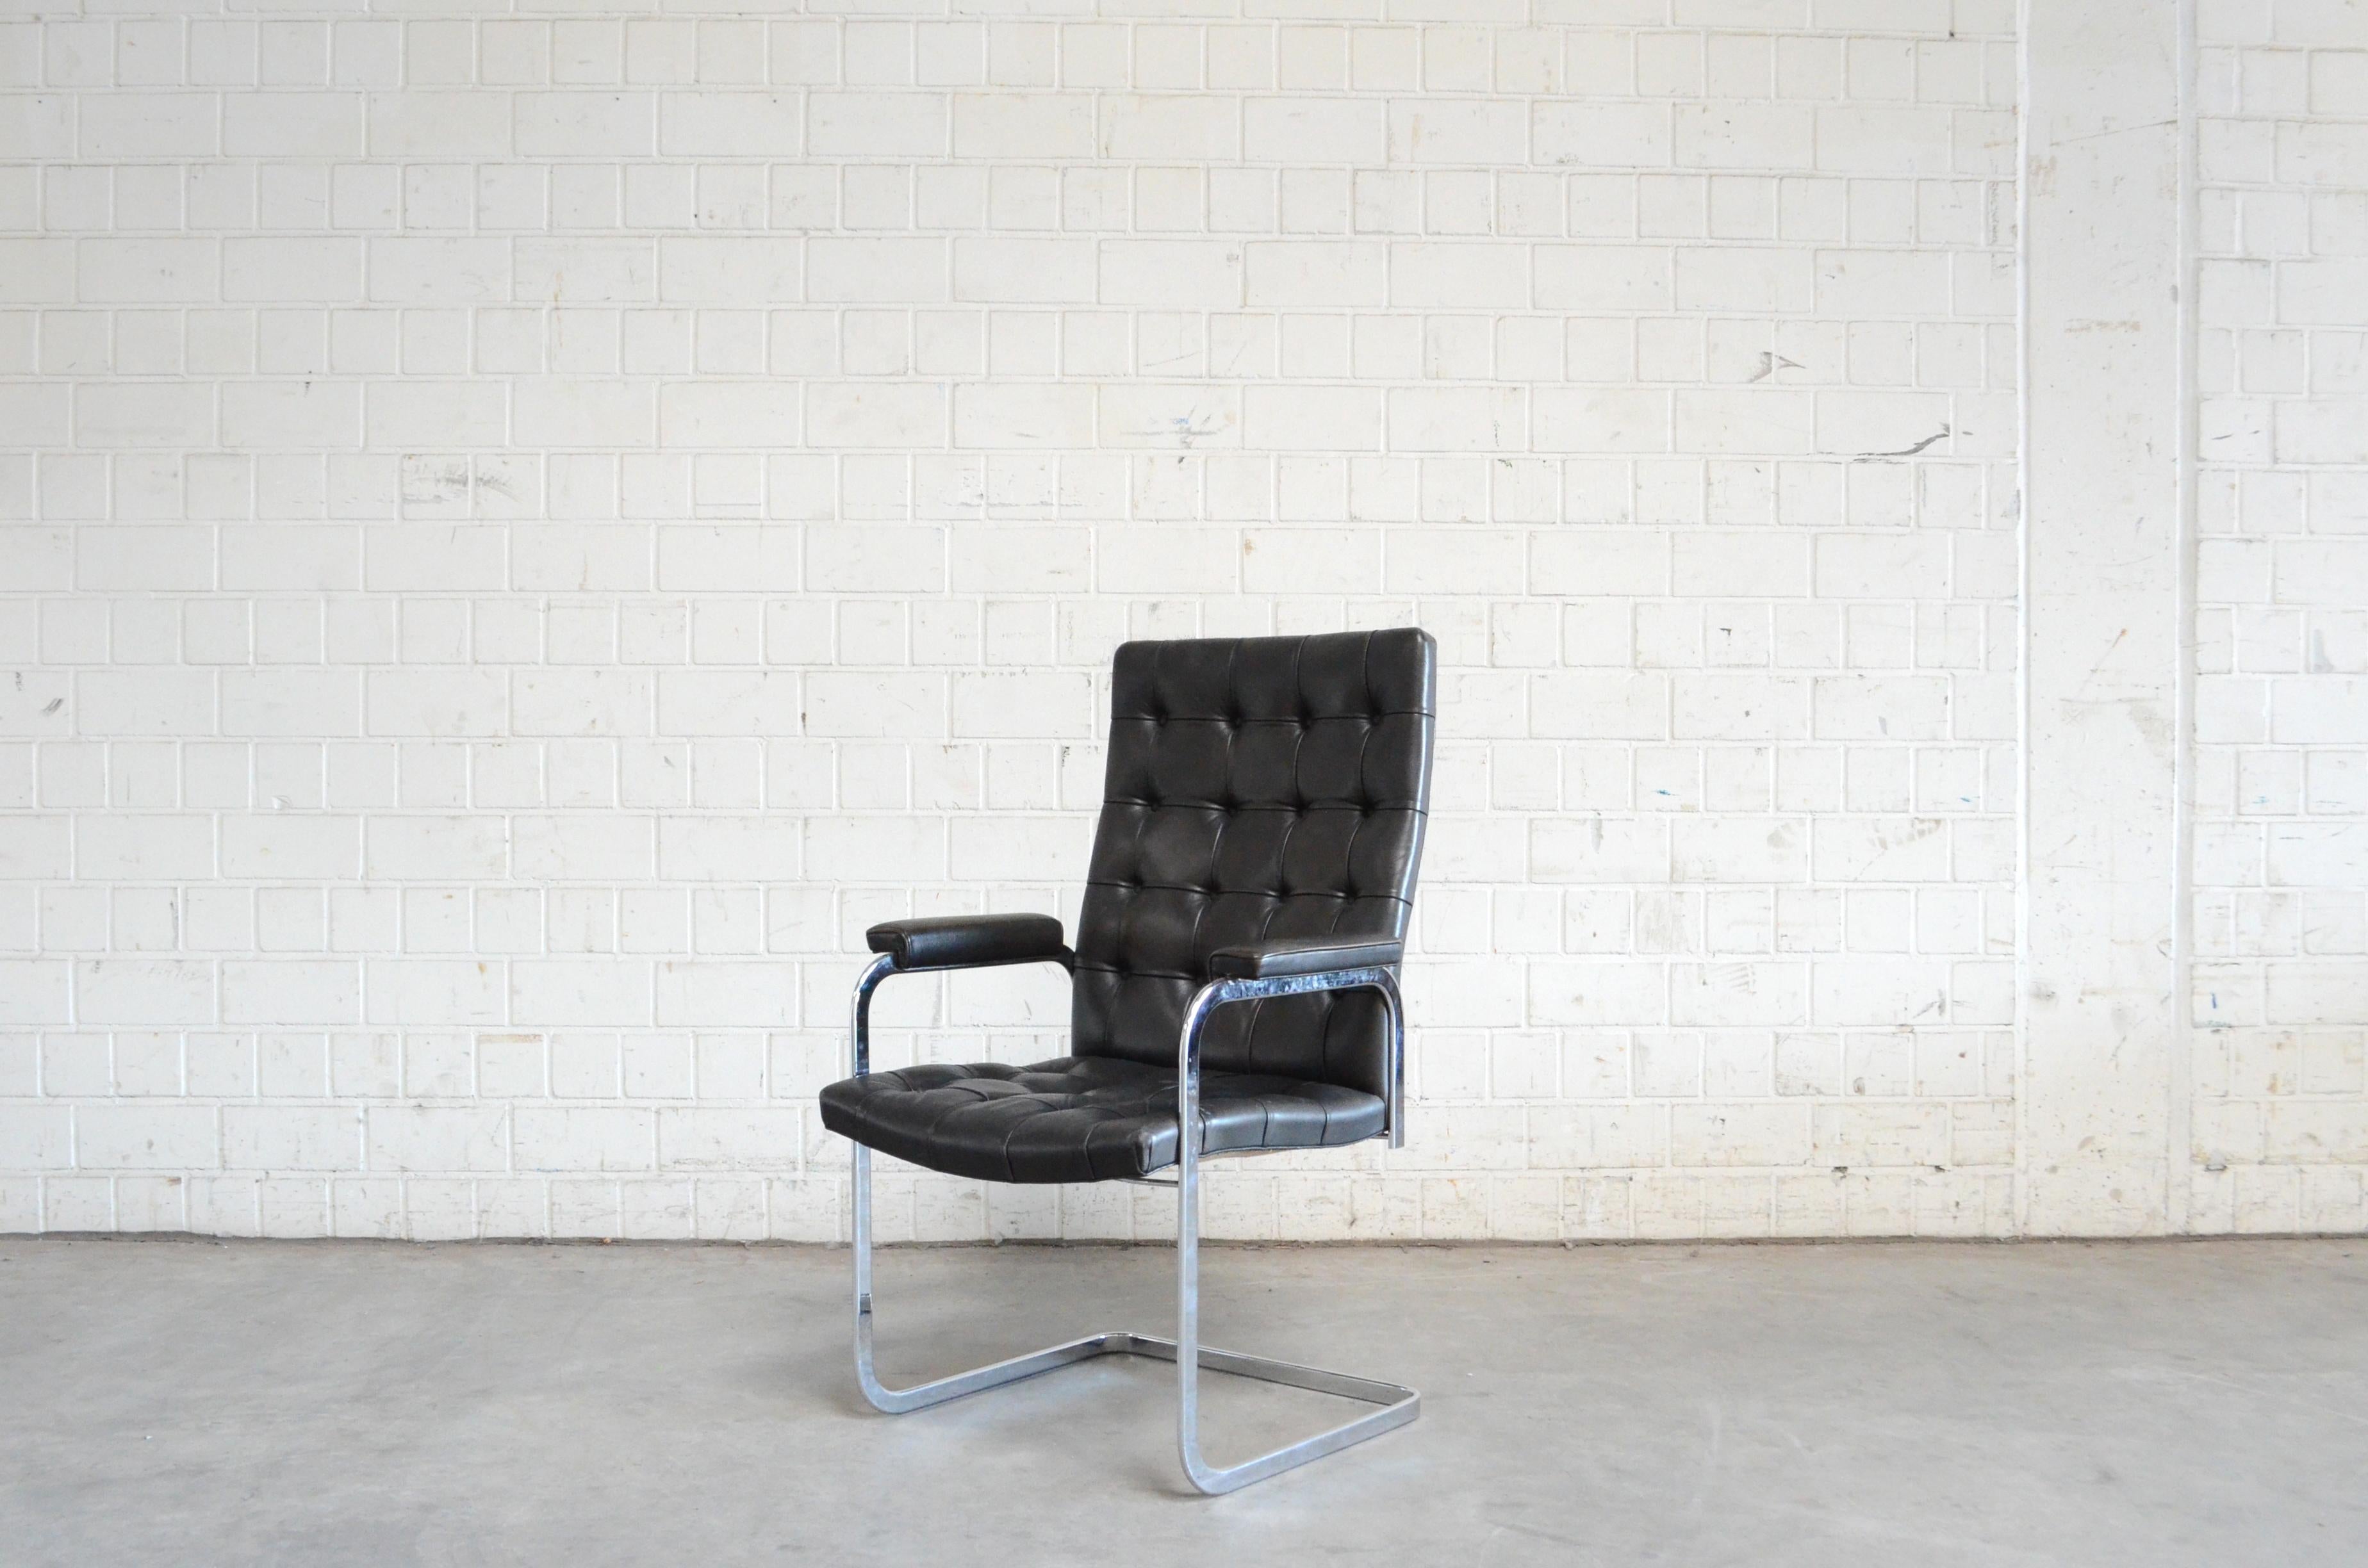 Robert Haussmann RH 305 Sesselentwurf von 1957 und hergestellt von De Sede.
Schwarzes Anilinleder und ein verchromter Stahlrahmen.
Dies ist ein klassischer Schweizer Design-Stuhl in der getufteten Hochlehner-Version.
Toller Zustand.
Preis für 1